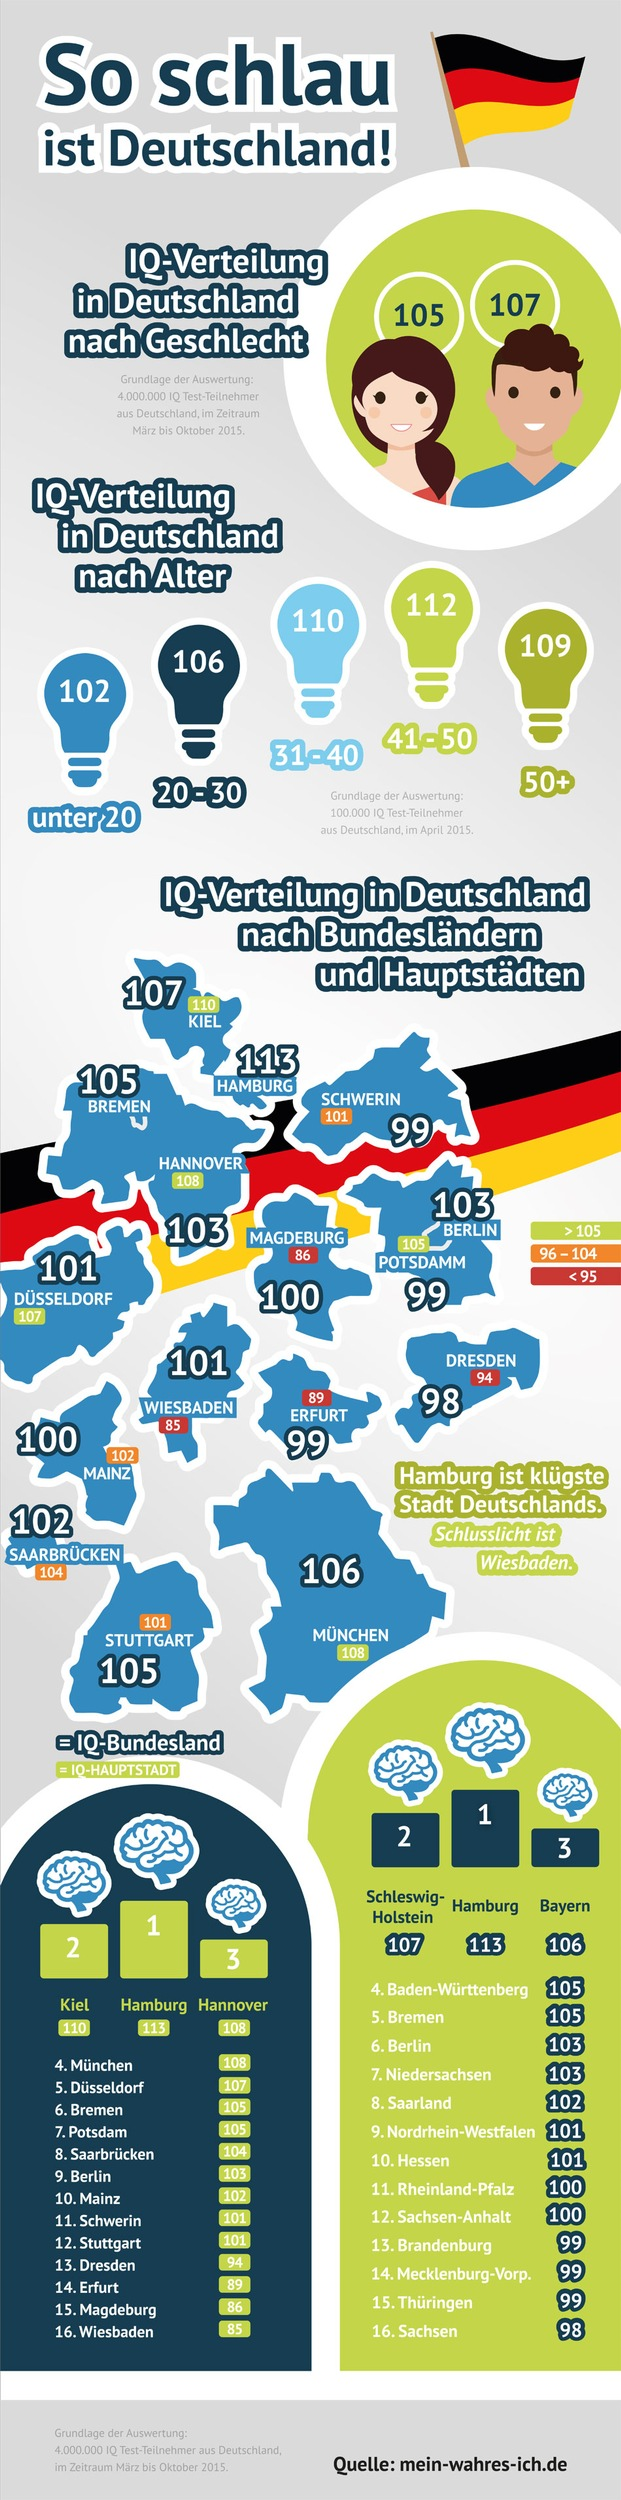 Aktuelle Infografik: Sind Männer schlauer als Frauen? (Foto: obs/fabulabs GmbH/Mein-wahres-Ich.de)